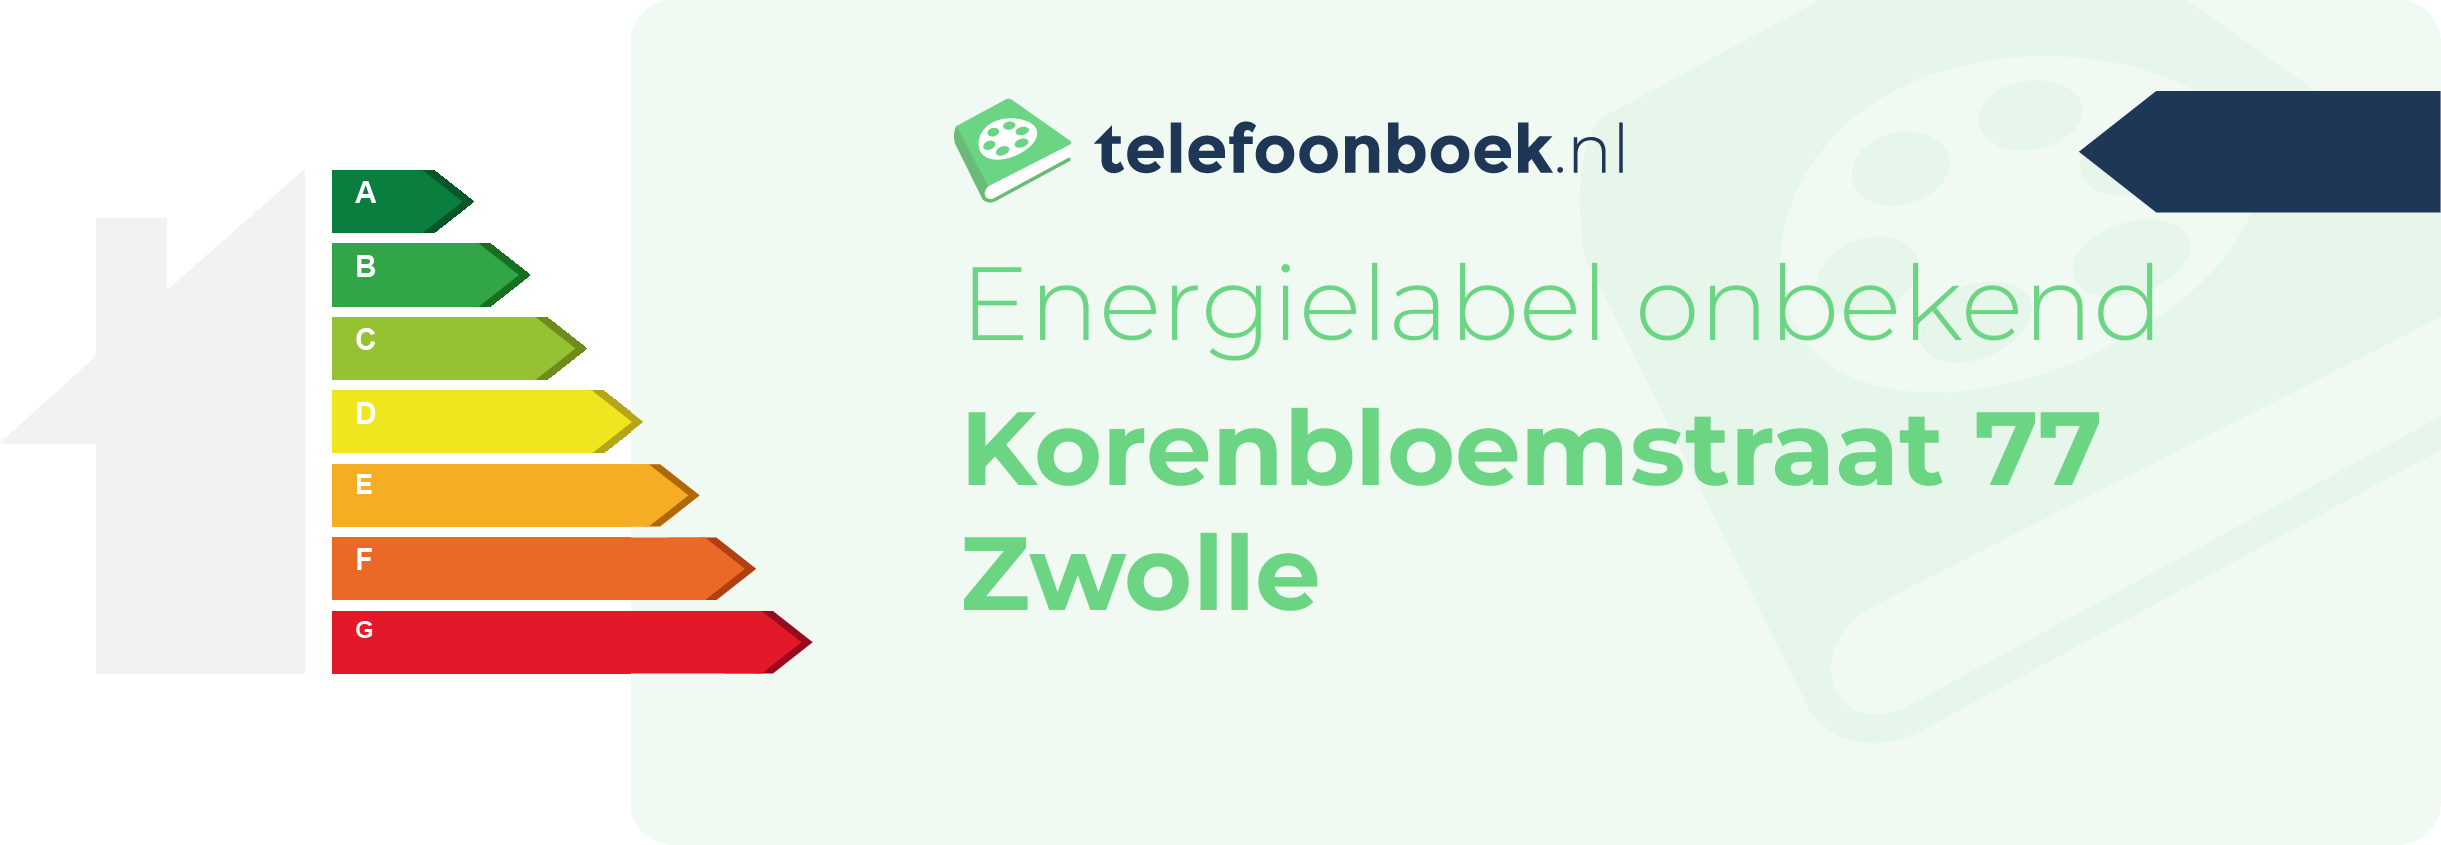 Energielabel Korenbloemstraat 77 Zwolle